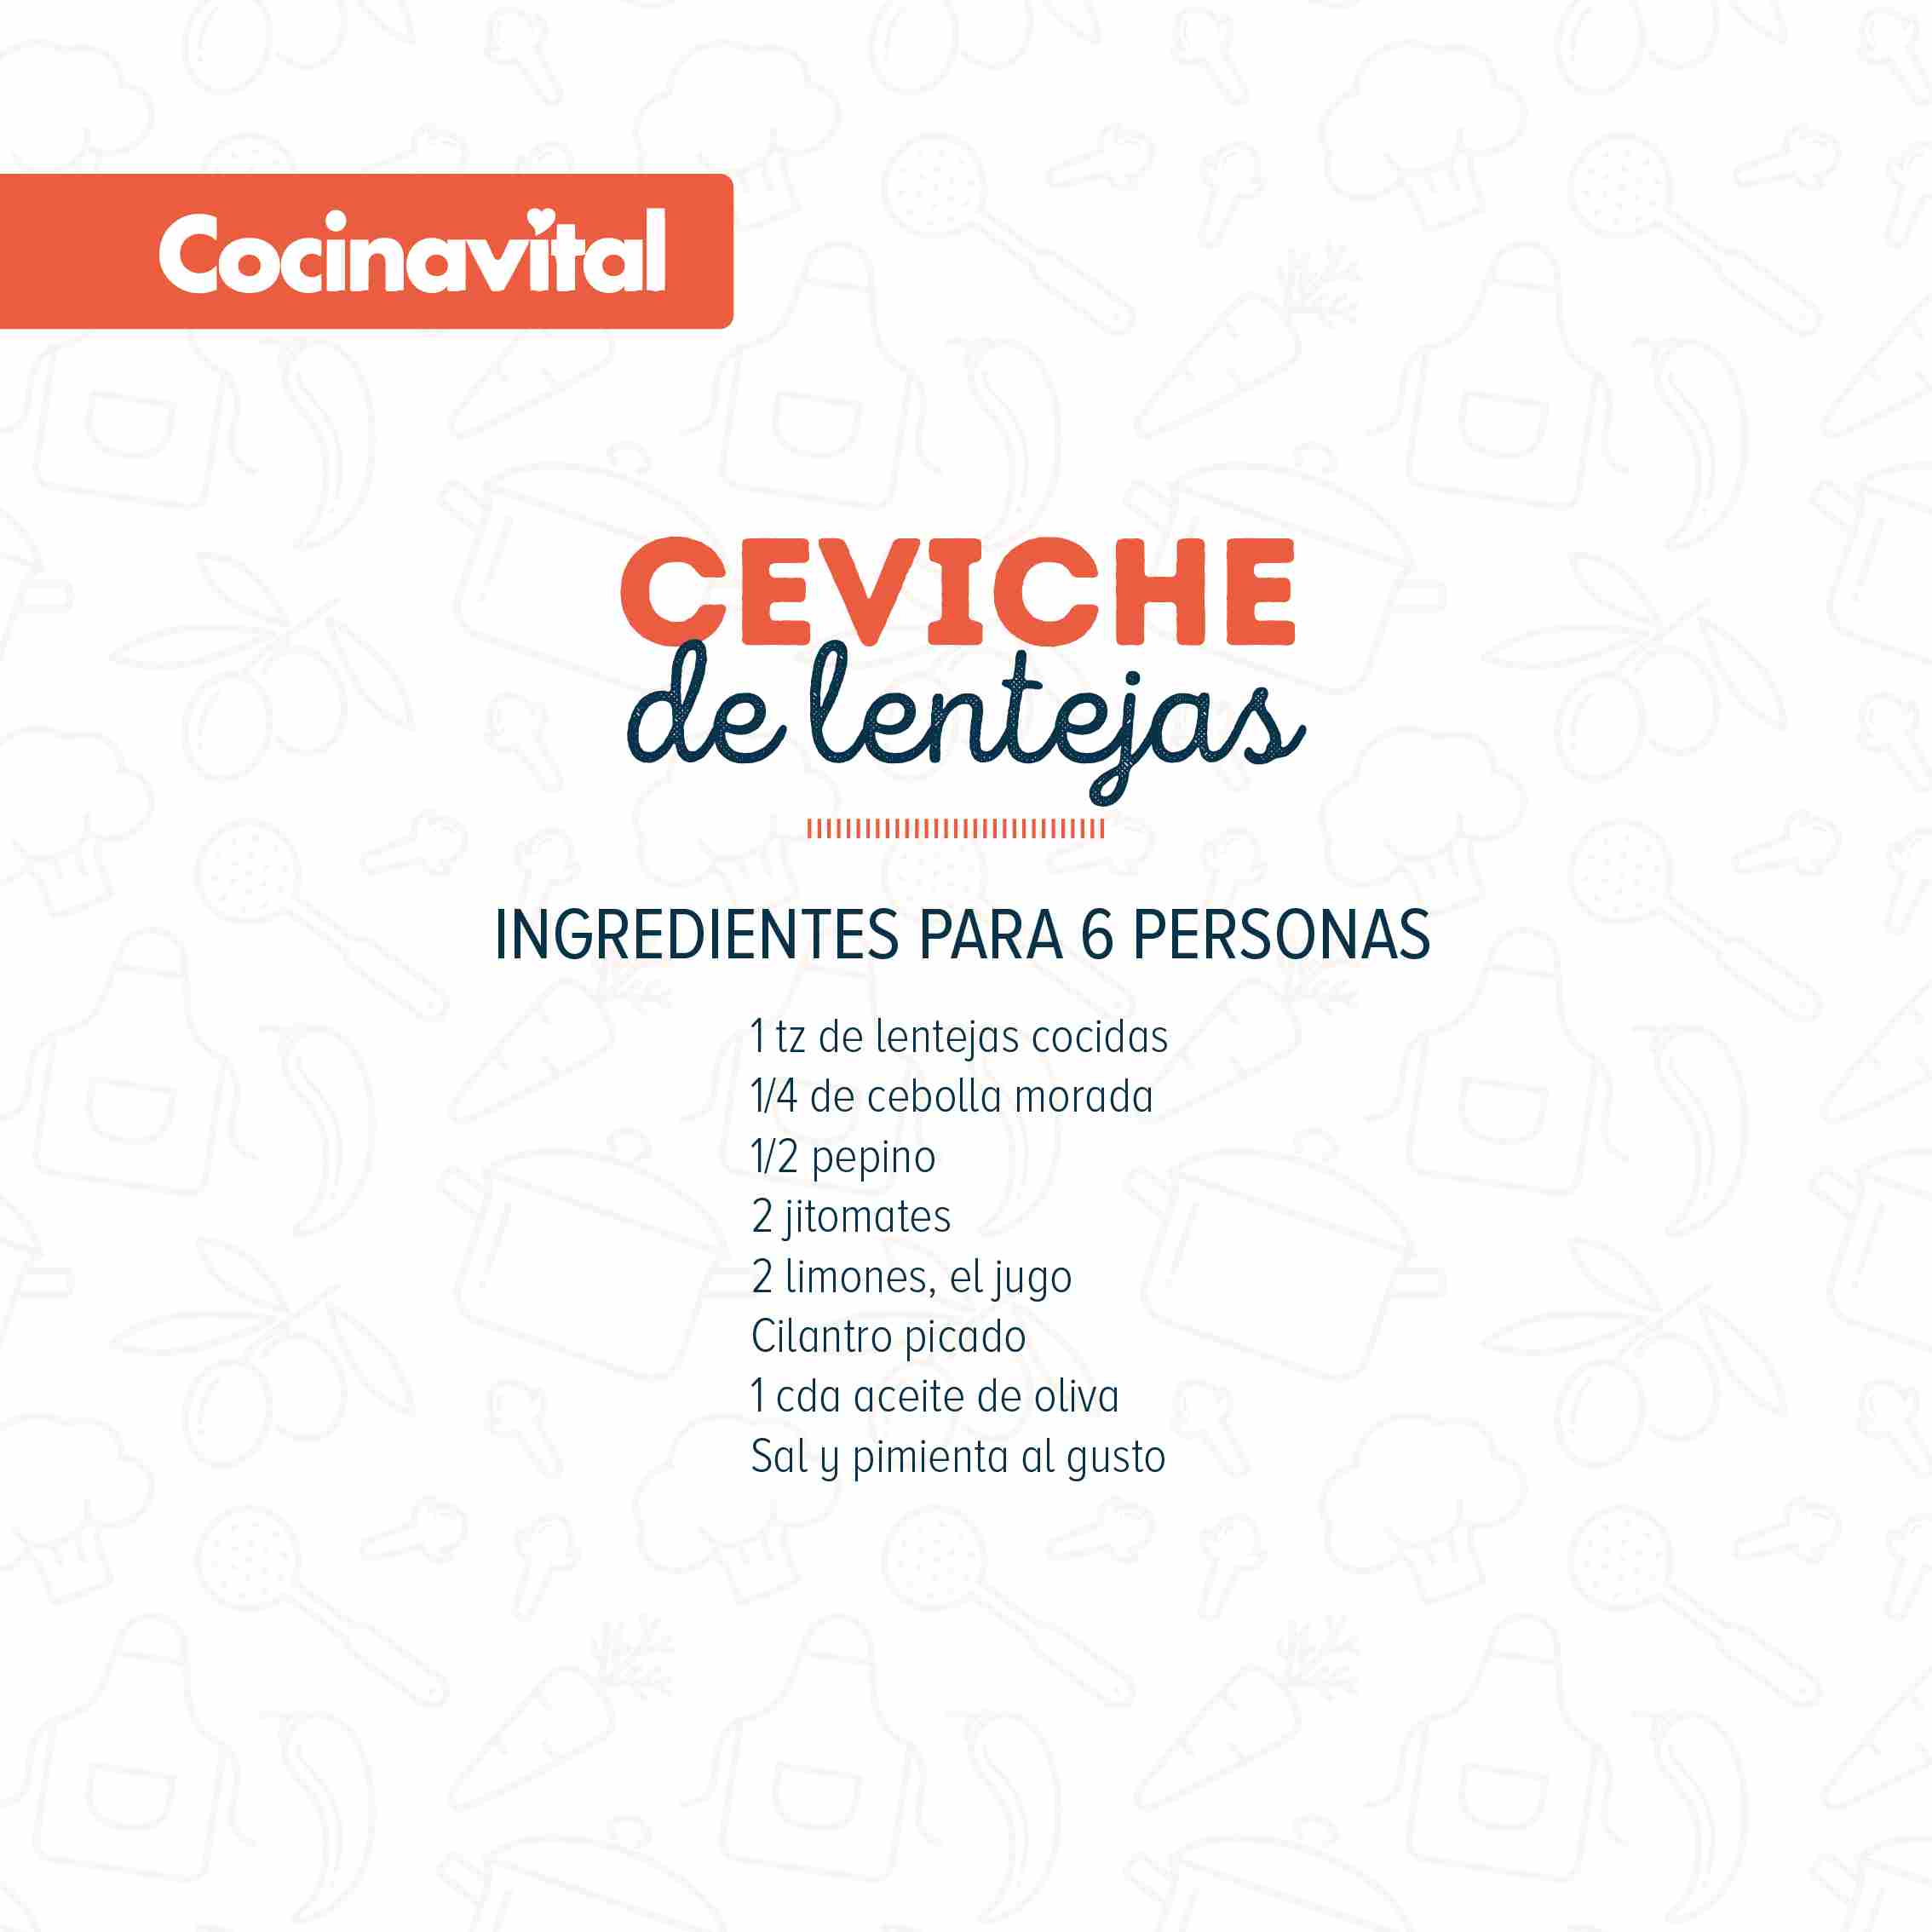 Ingredientes Ceviche de lentejas